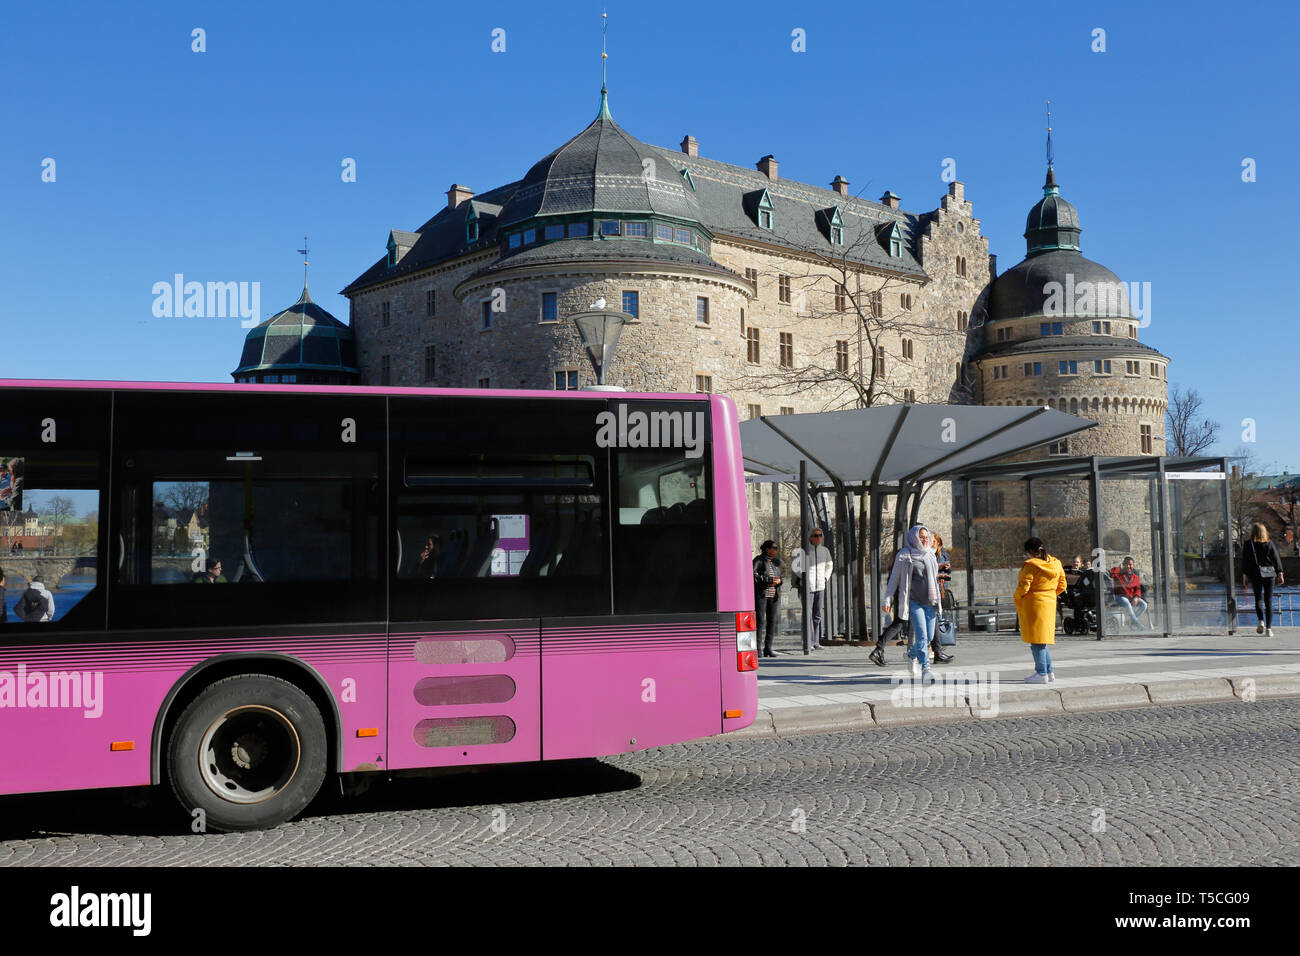 Orebro, Suecia - 17 de abril de 2019: Una violeta ciudad transporte público bus enfrente del castillo de Örebro. Foto de stock